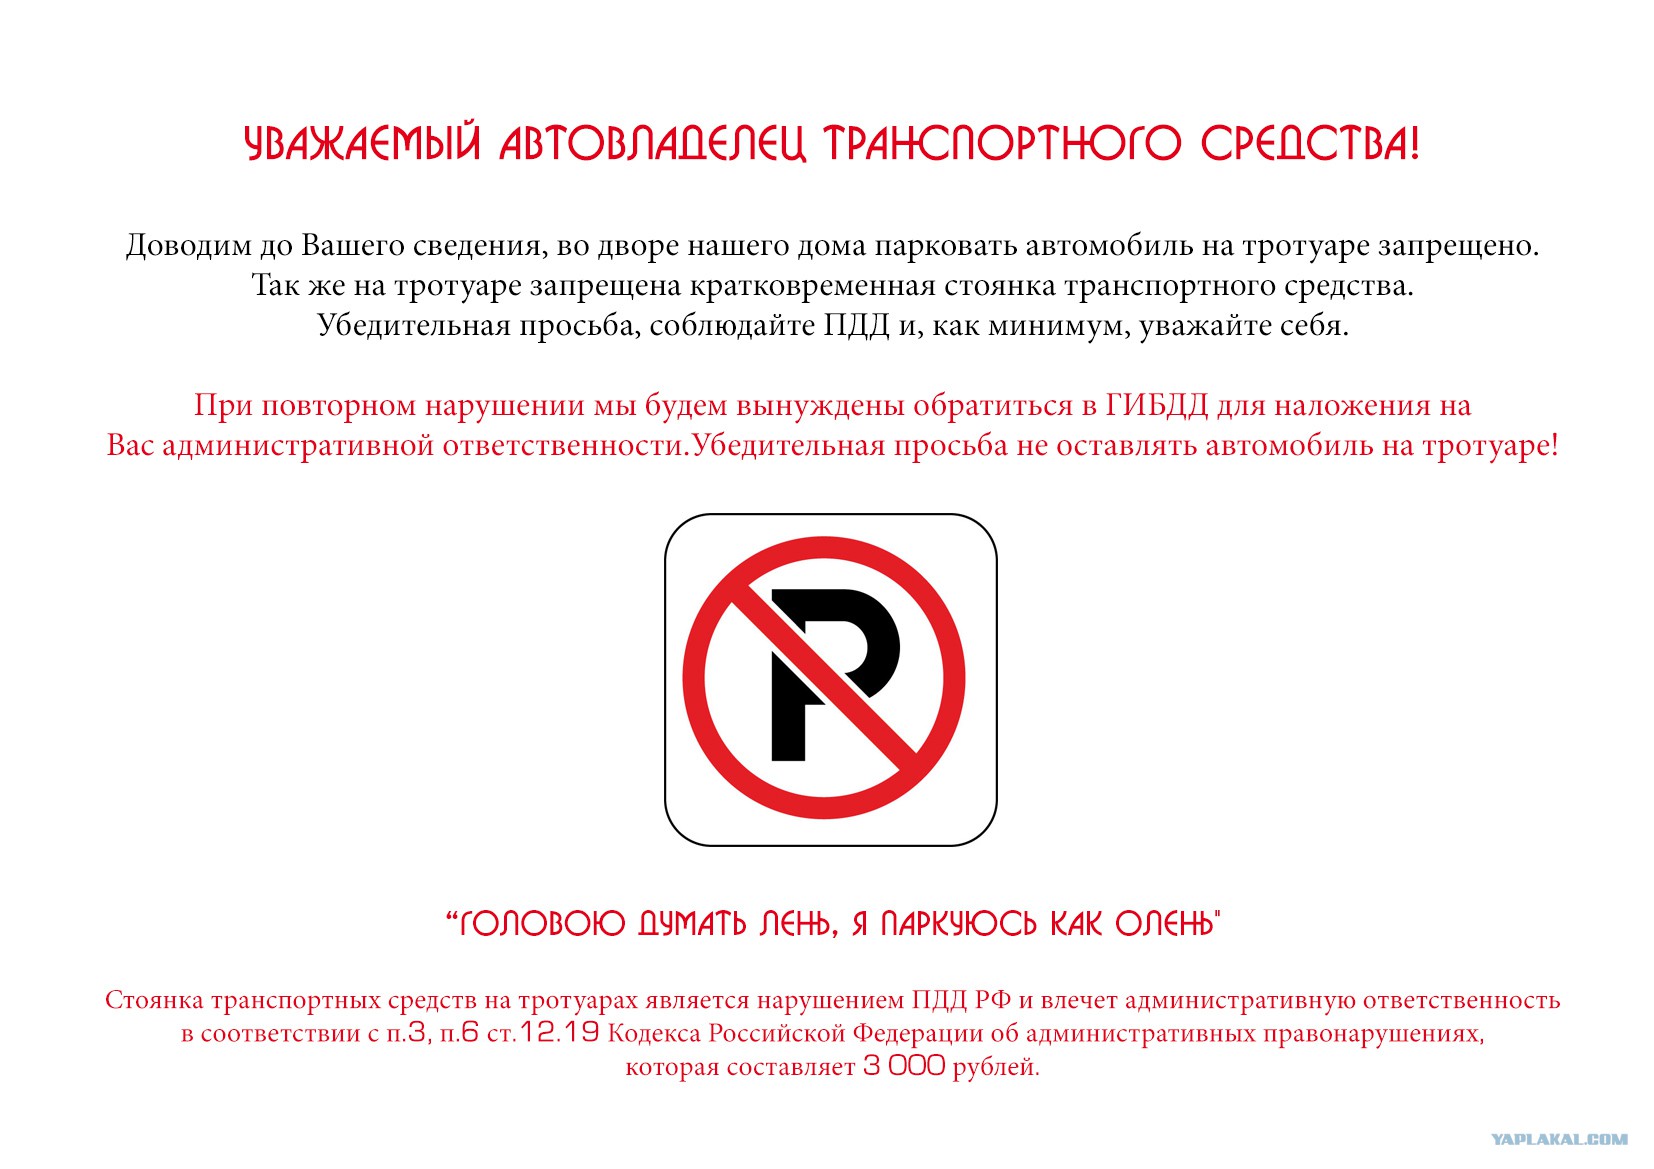 Предупреждение или штраф 500 рублей. Объявление о запрете парковки во дворе. Предупреждение о запрете парковки на тротуаре. Табличка о запрете парковки. Запрет парковки автомобилей во дворах жилых домов.